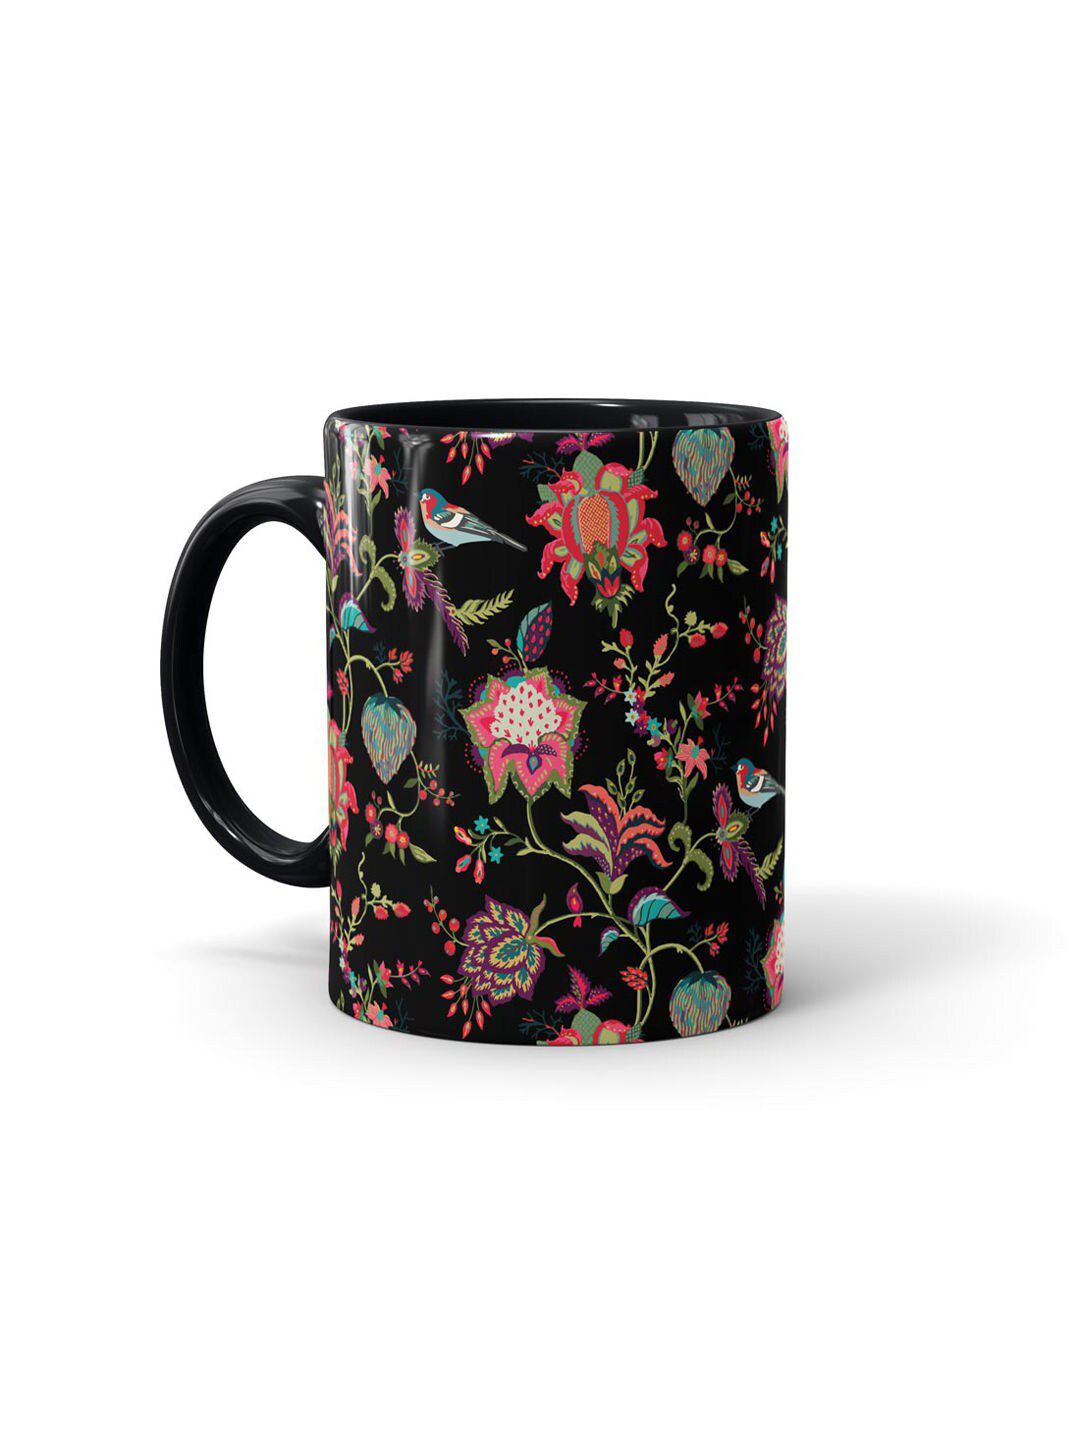 macmerise Black & Red Floral Printed Ceramic Glossy Mug Price in India